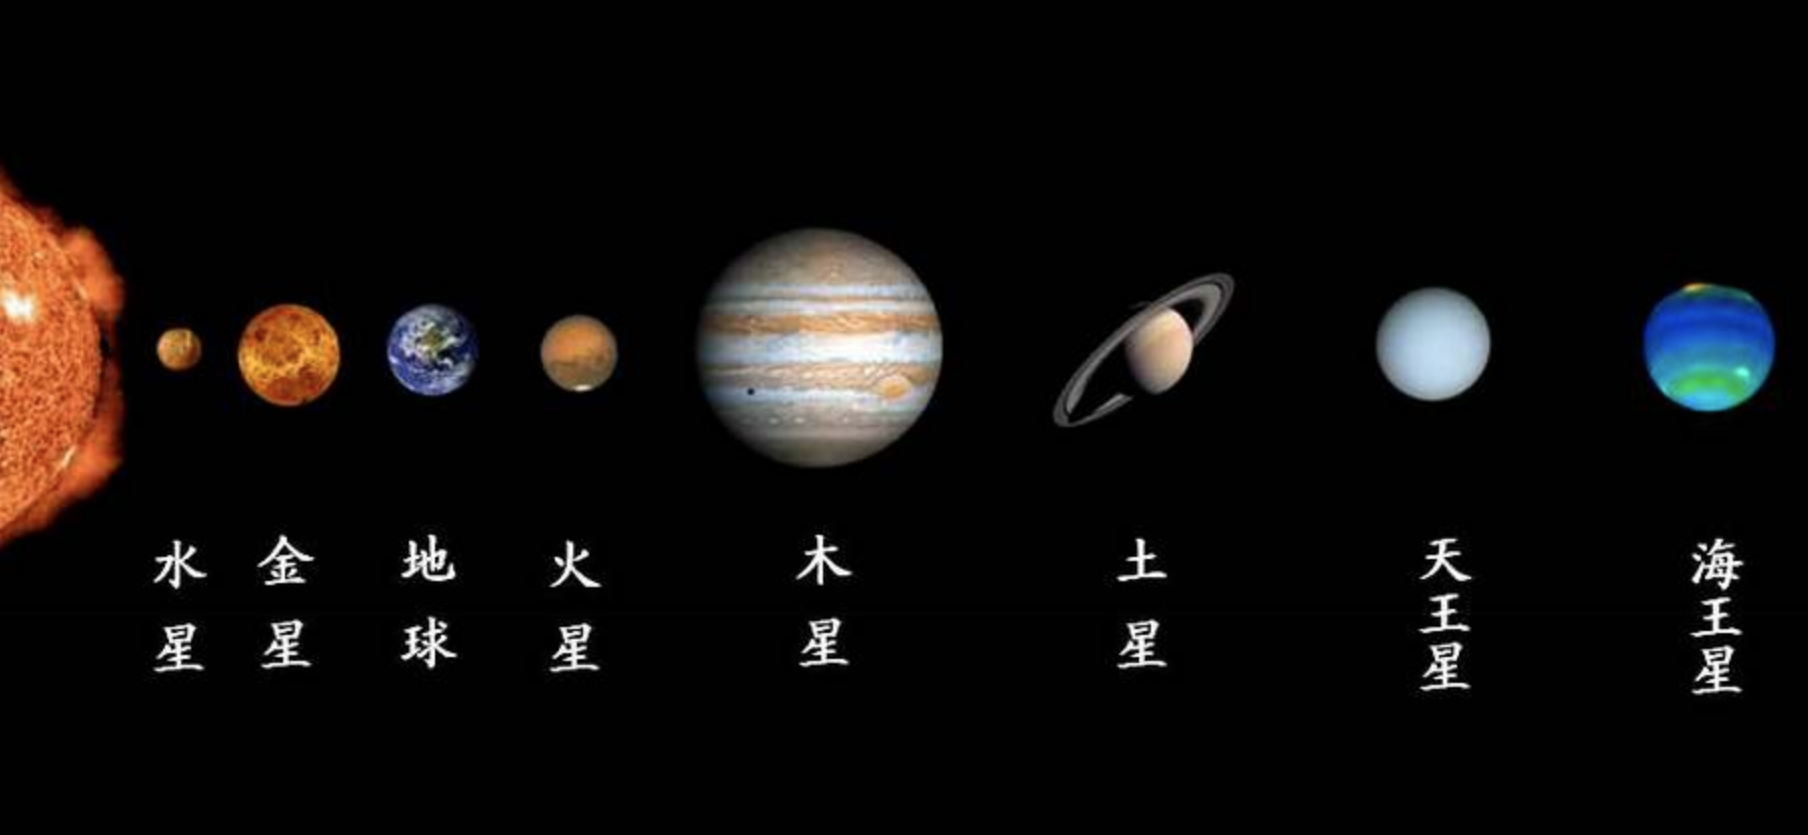 八大行星排列顺序是什么(八大行星示意图)